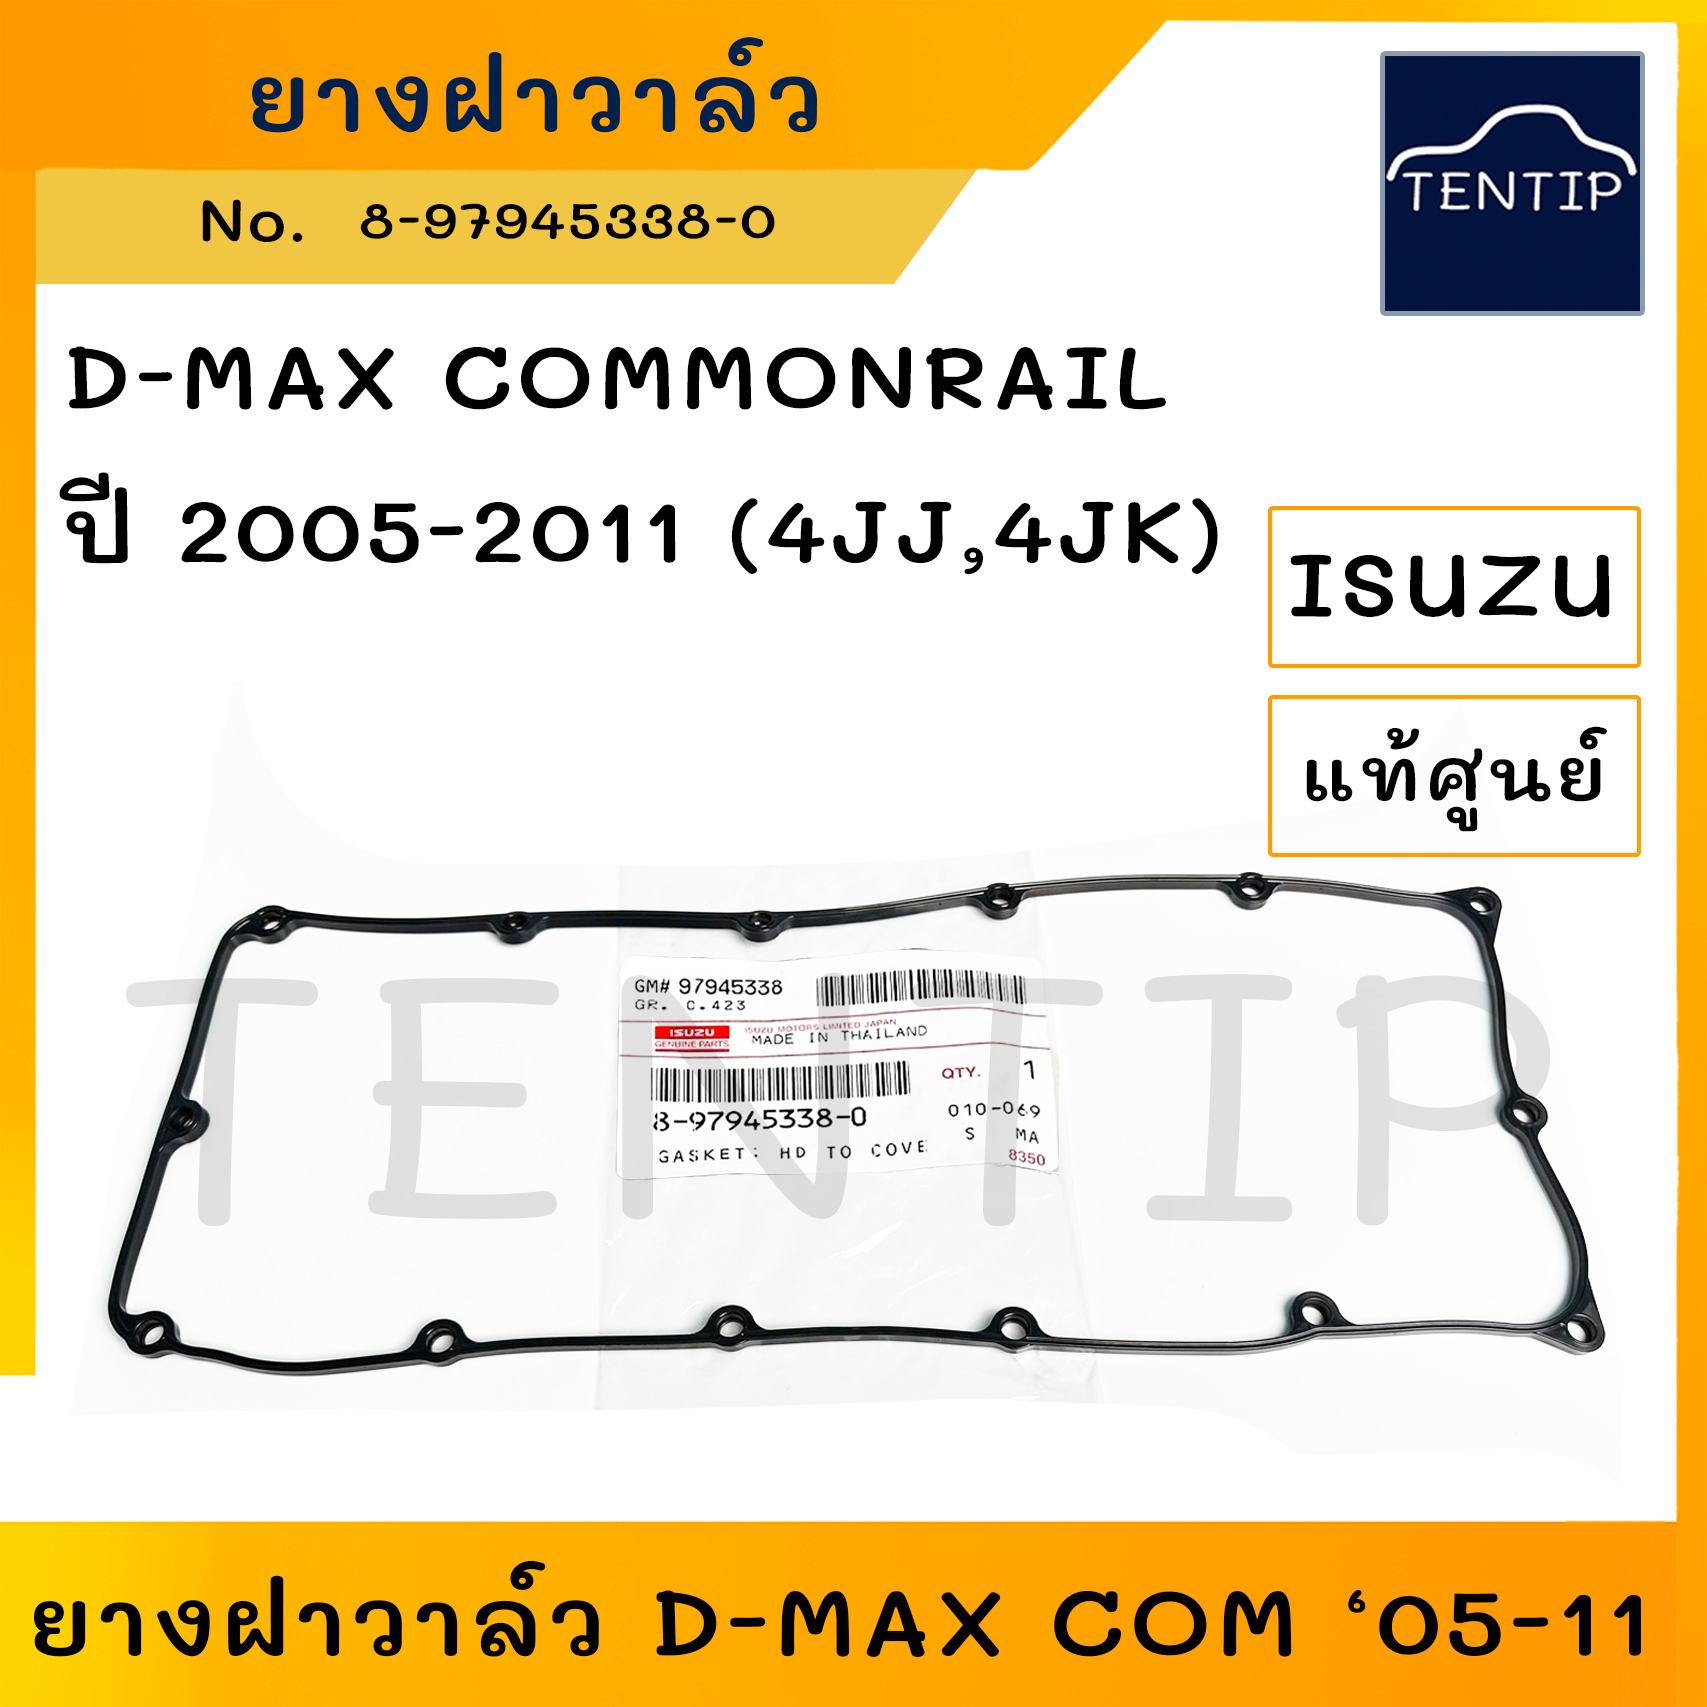 แท้ศูนย์ ISUZU D-MAX Dmax COMMONRAIL 2005-2011 (4JJ,4JK) ปะเก็นฝาวาล์ว ซีลยางฝาวาล์ว ดีแม็ก คอมม่อนเรล 8-97945338-0